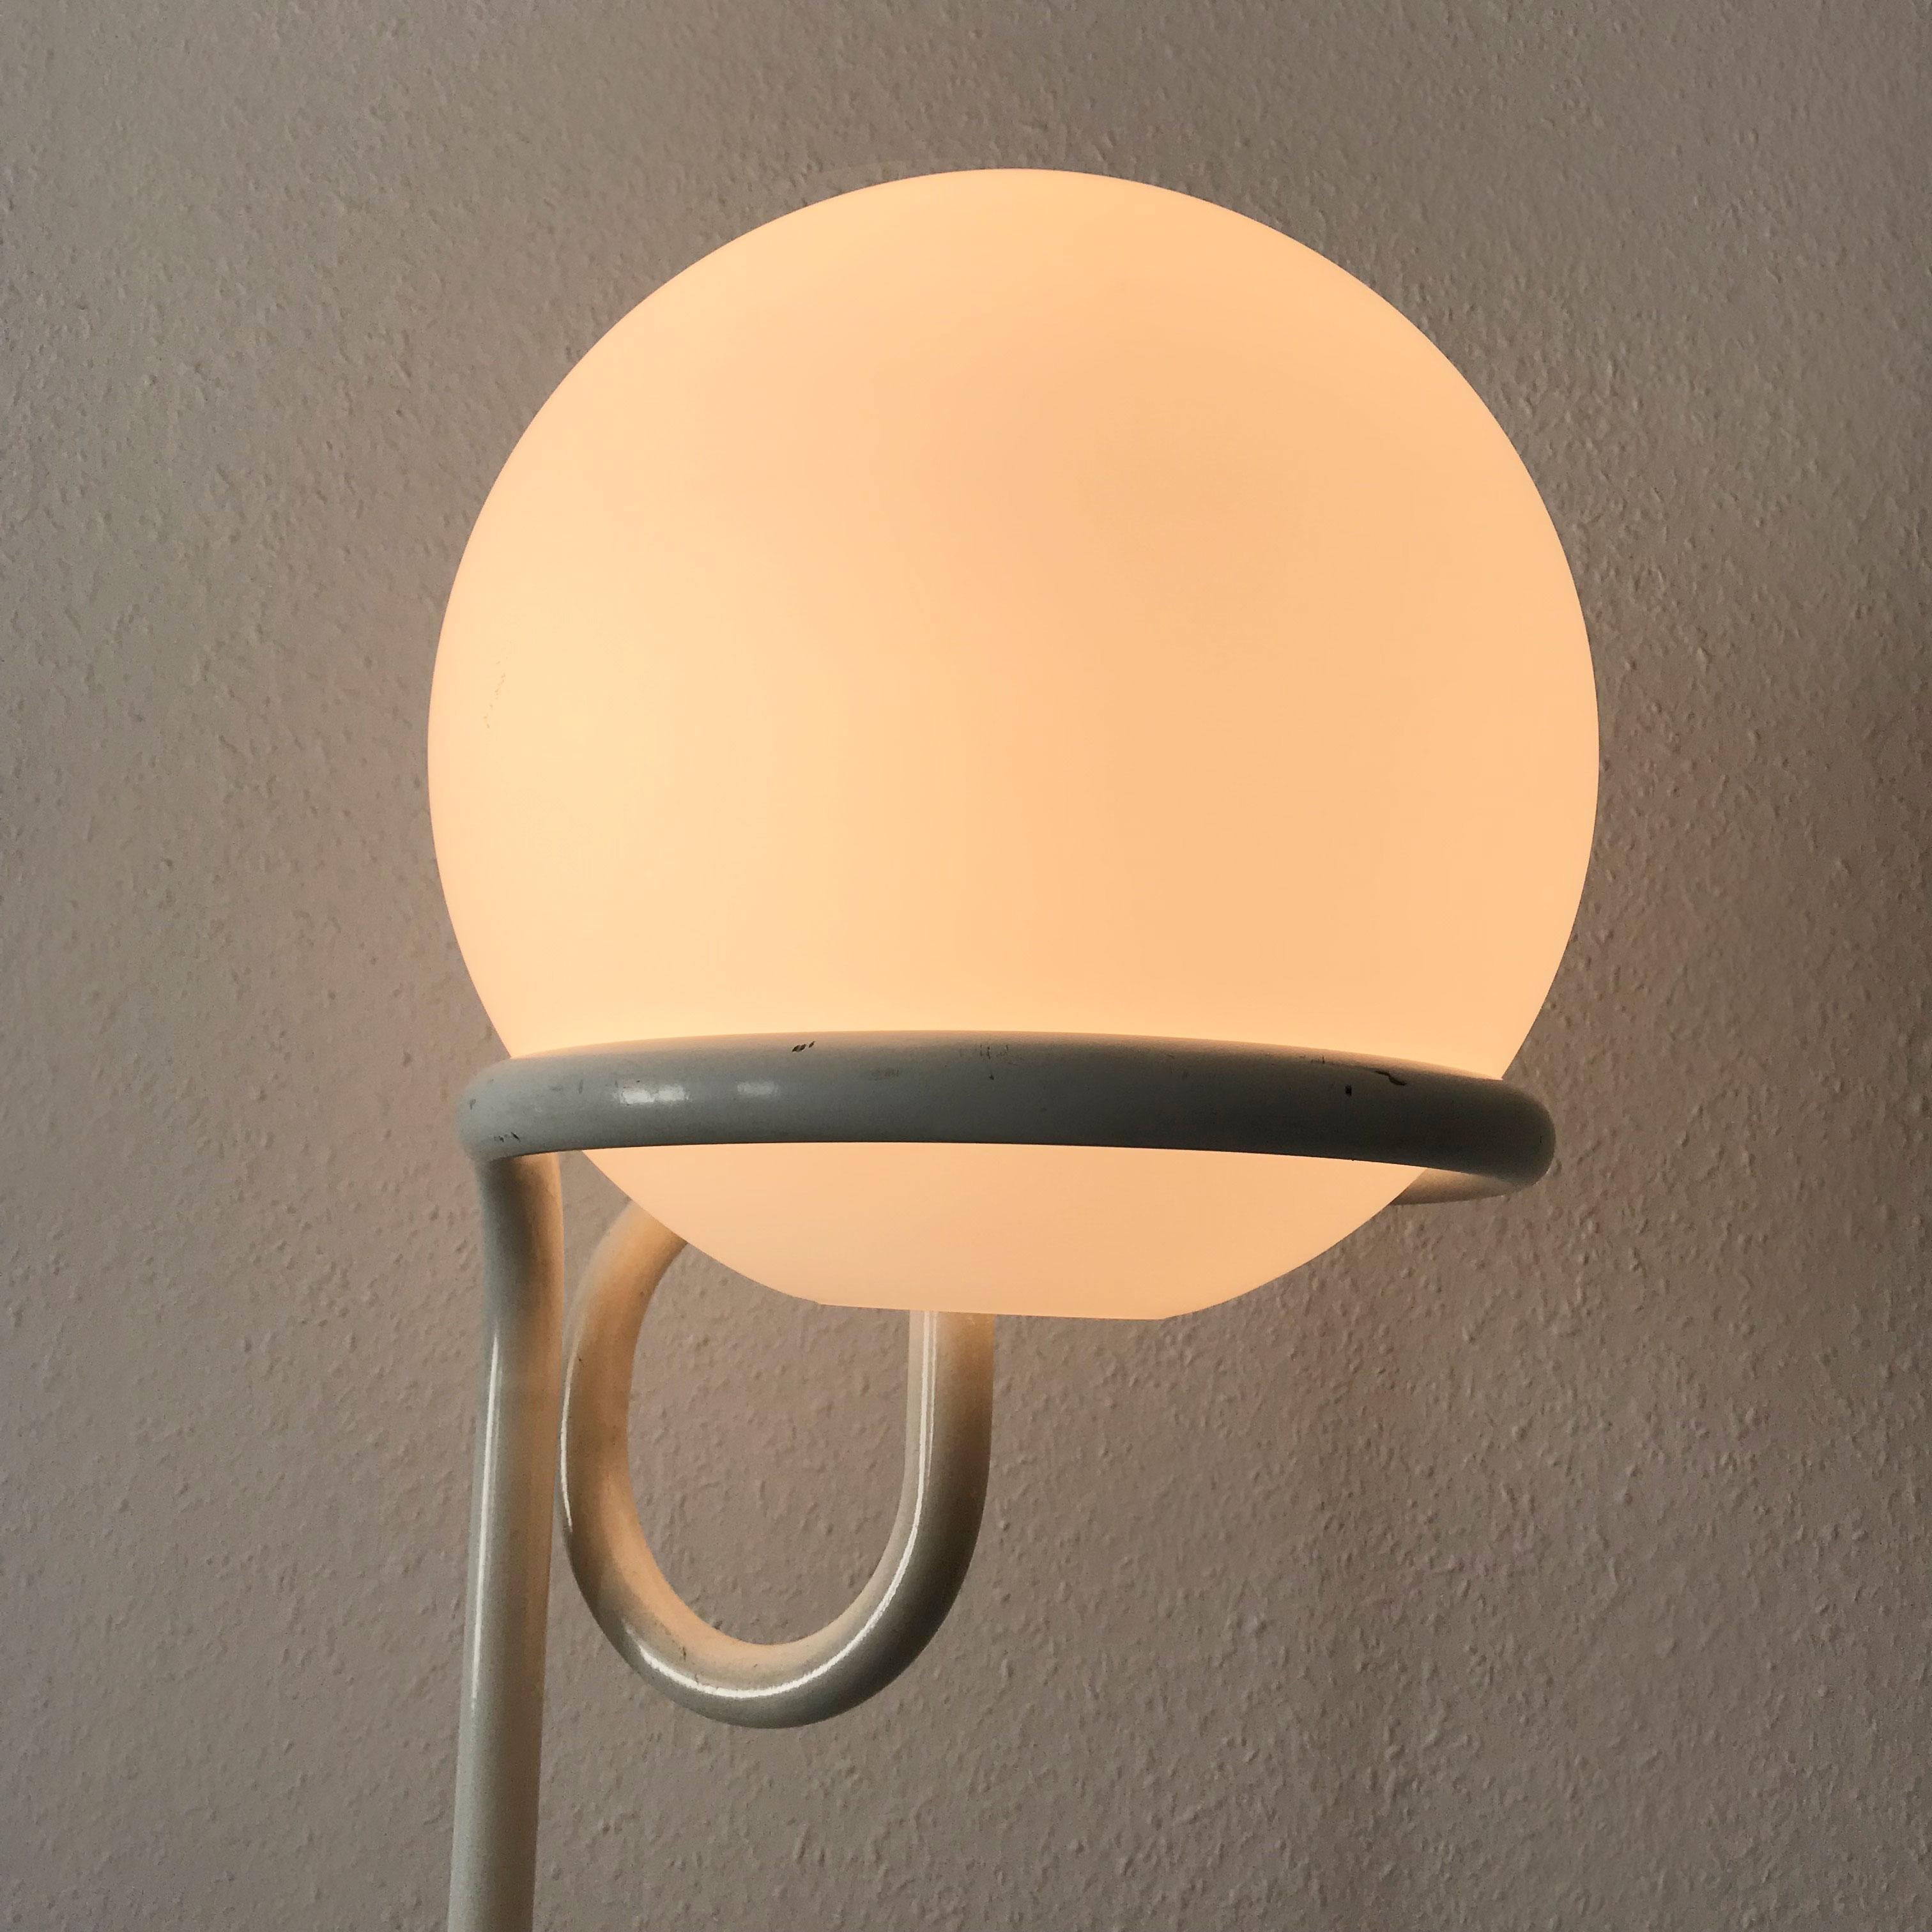 Floor Lamp Globe by Aldo Van Den Nieuwelaar for Domani Designs Amsterdam 1967 In Good Condition For Sale In Munich, DE